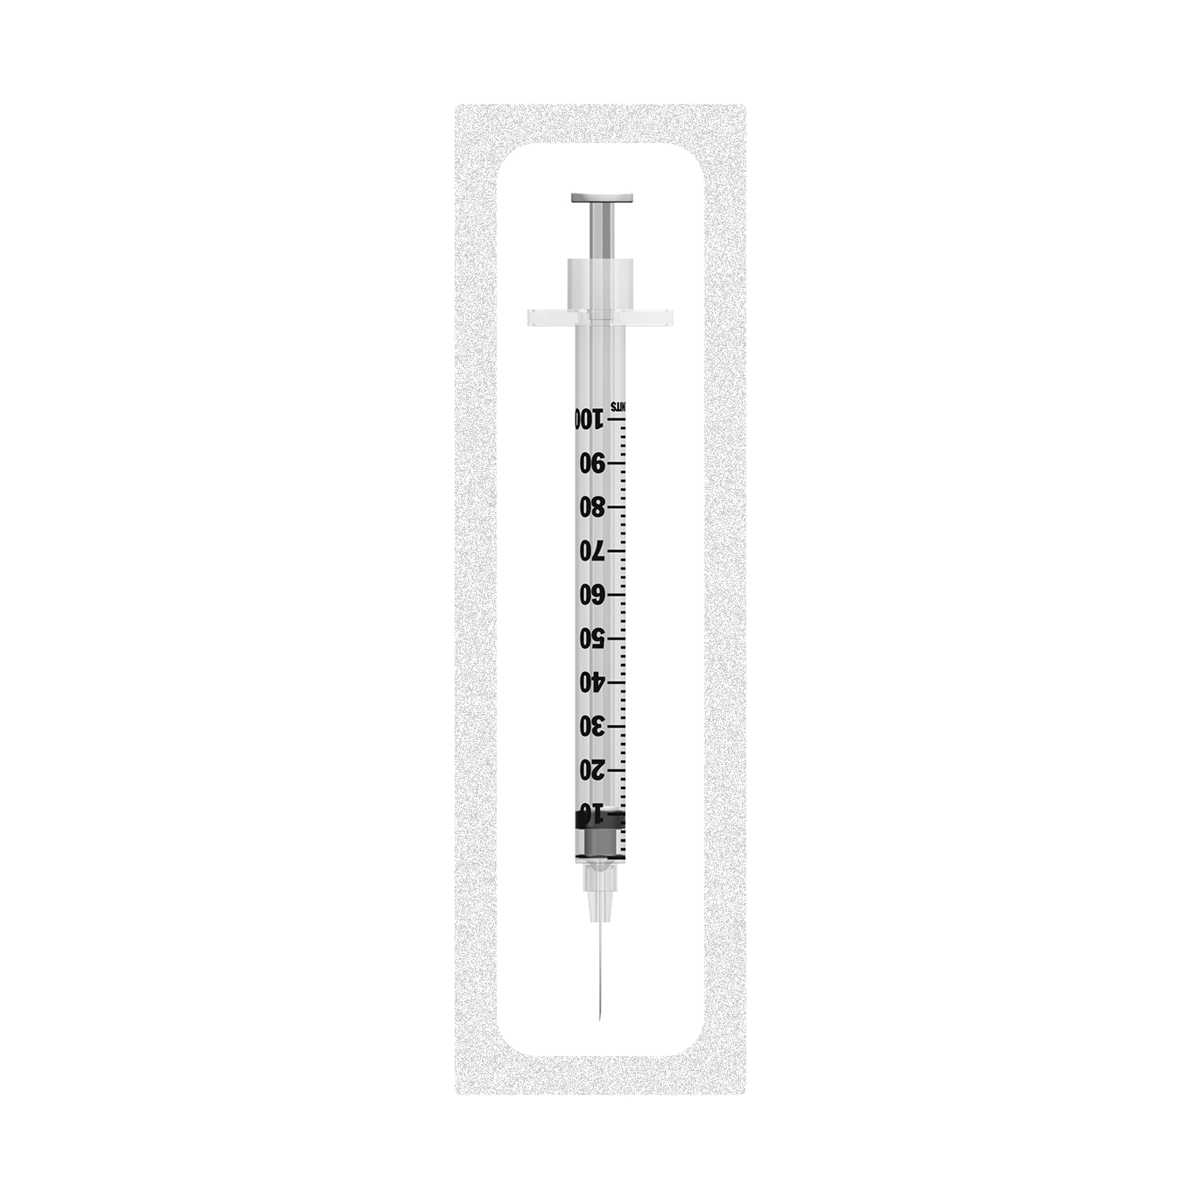 1ml BD Micro-Fine 29G Insulin Syringe (Blister Packed)